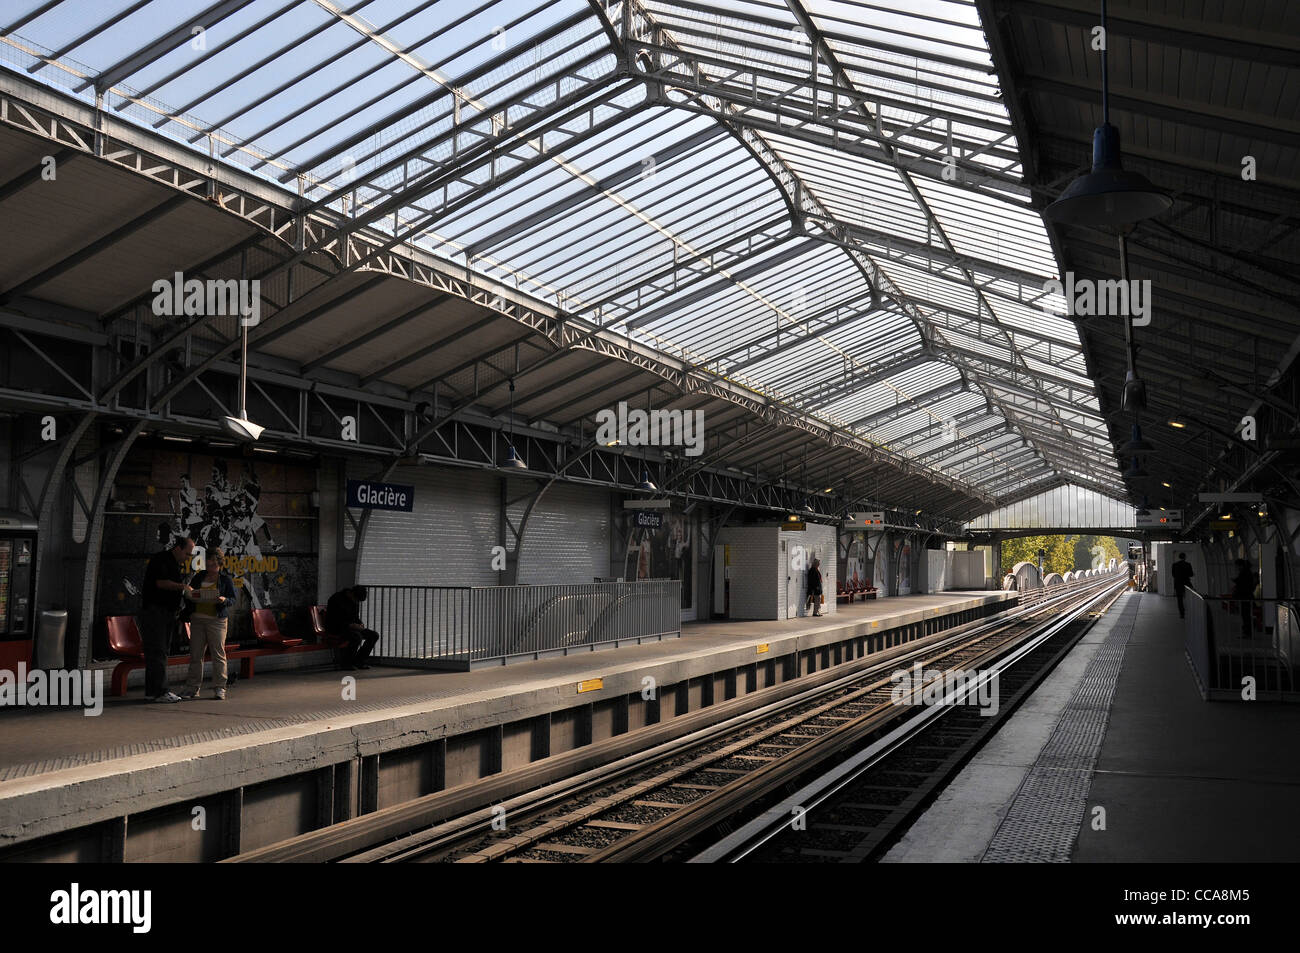 Personne dans la station de métro Glacière, Paris, France Banque D'Images